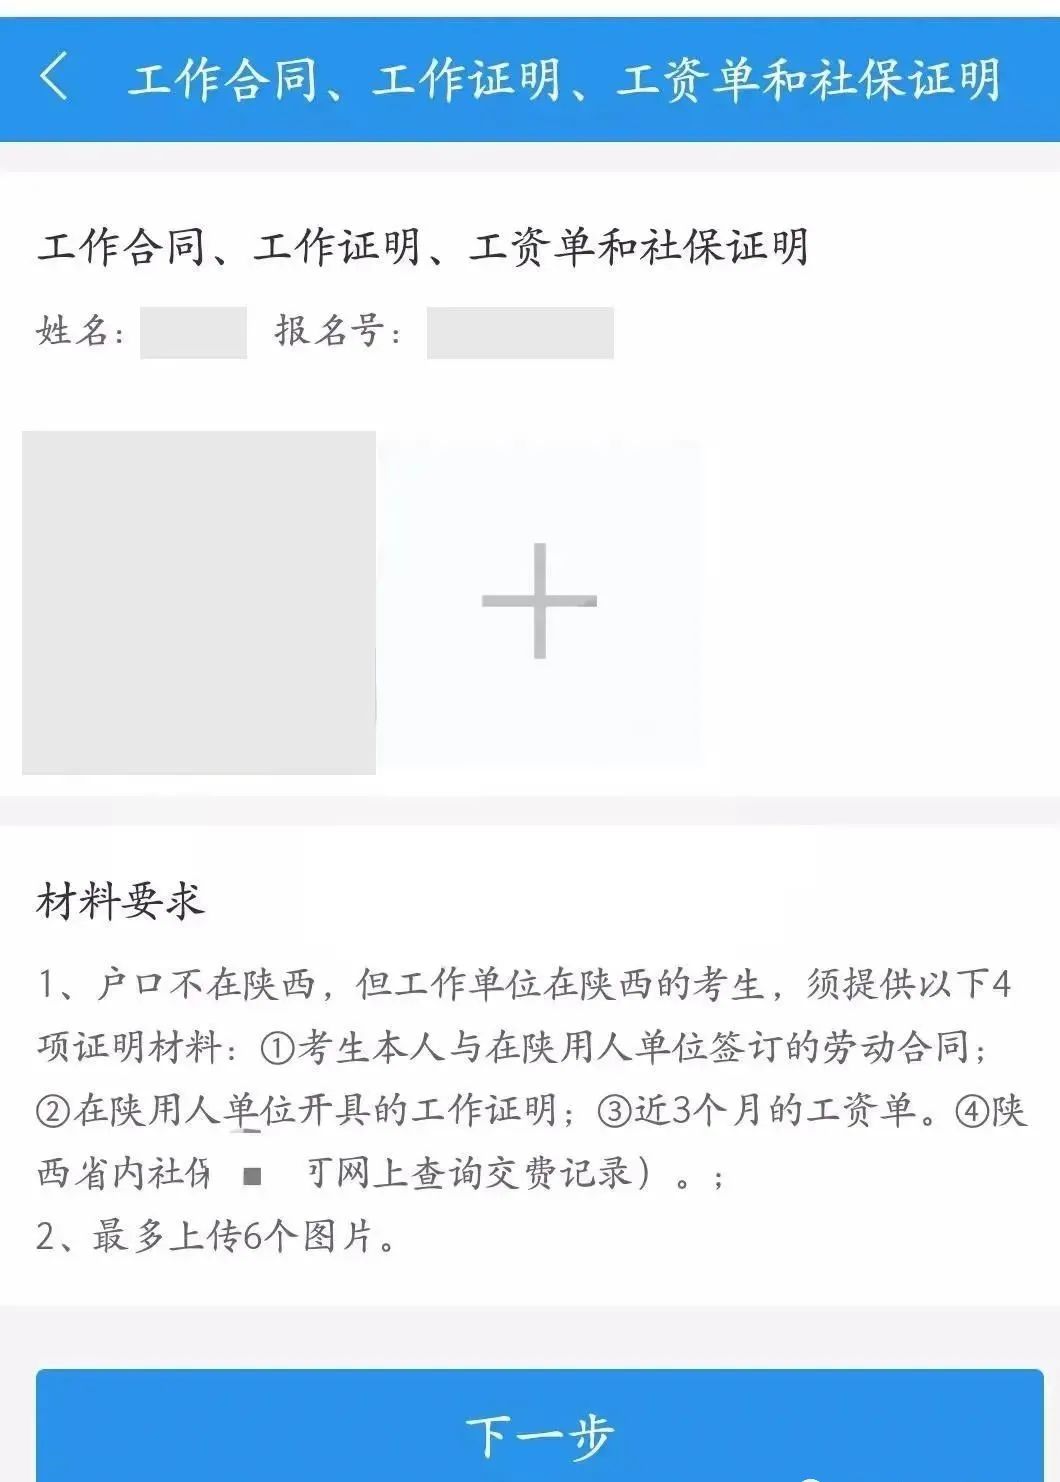 23考研杭州在职学员网上确认详细流程图一览